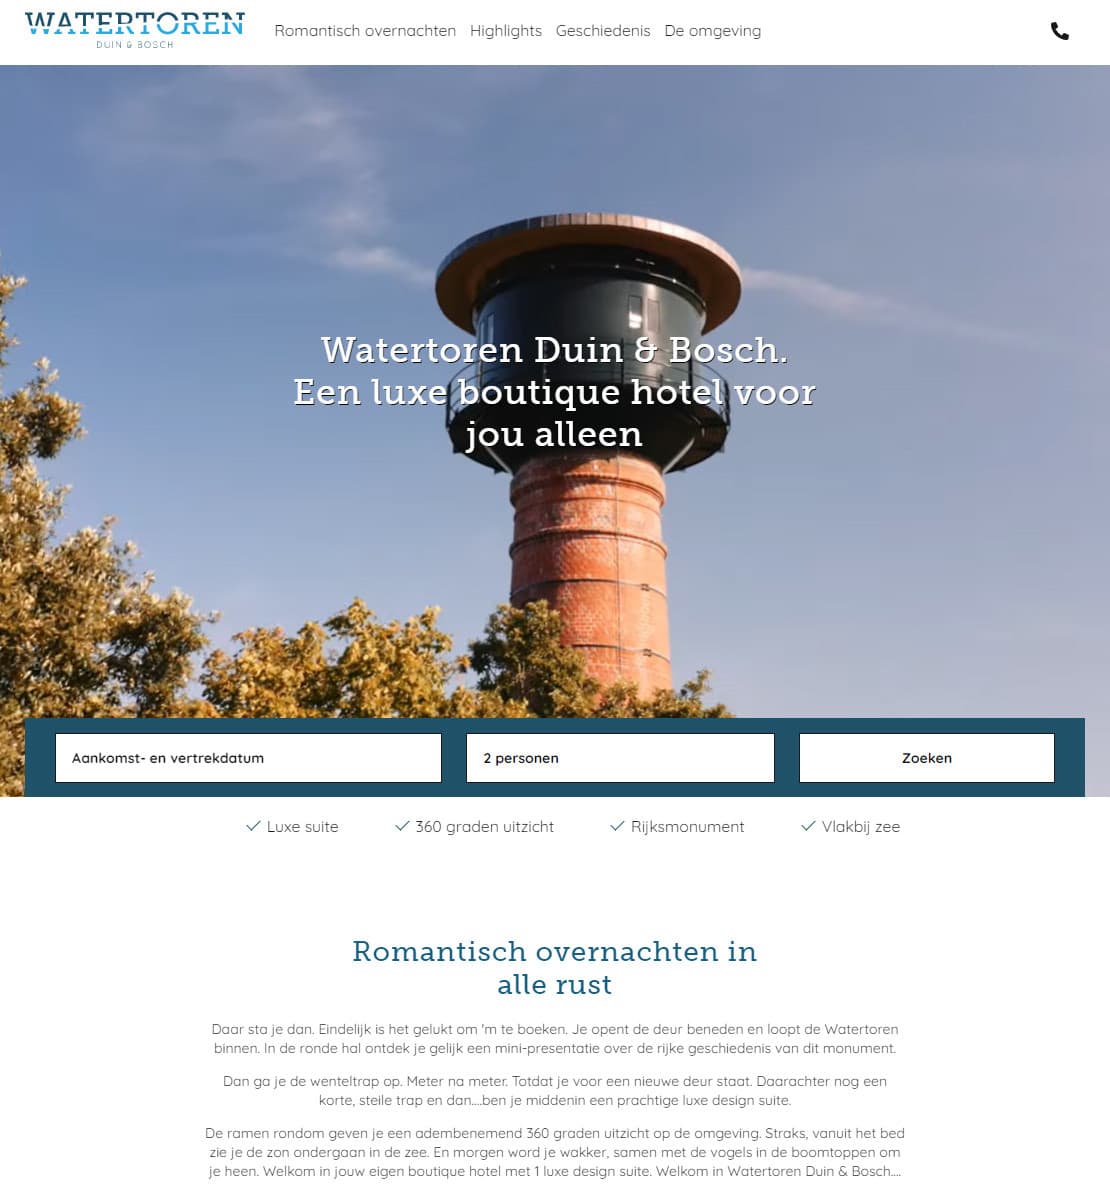 Watertoren Duin & Bosch